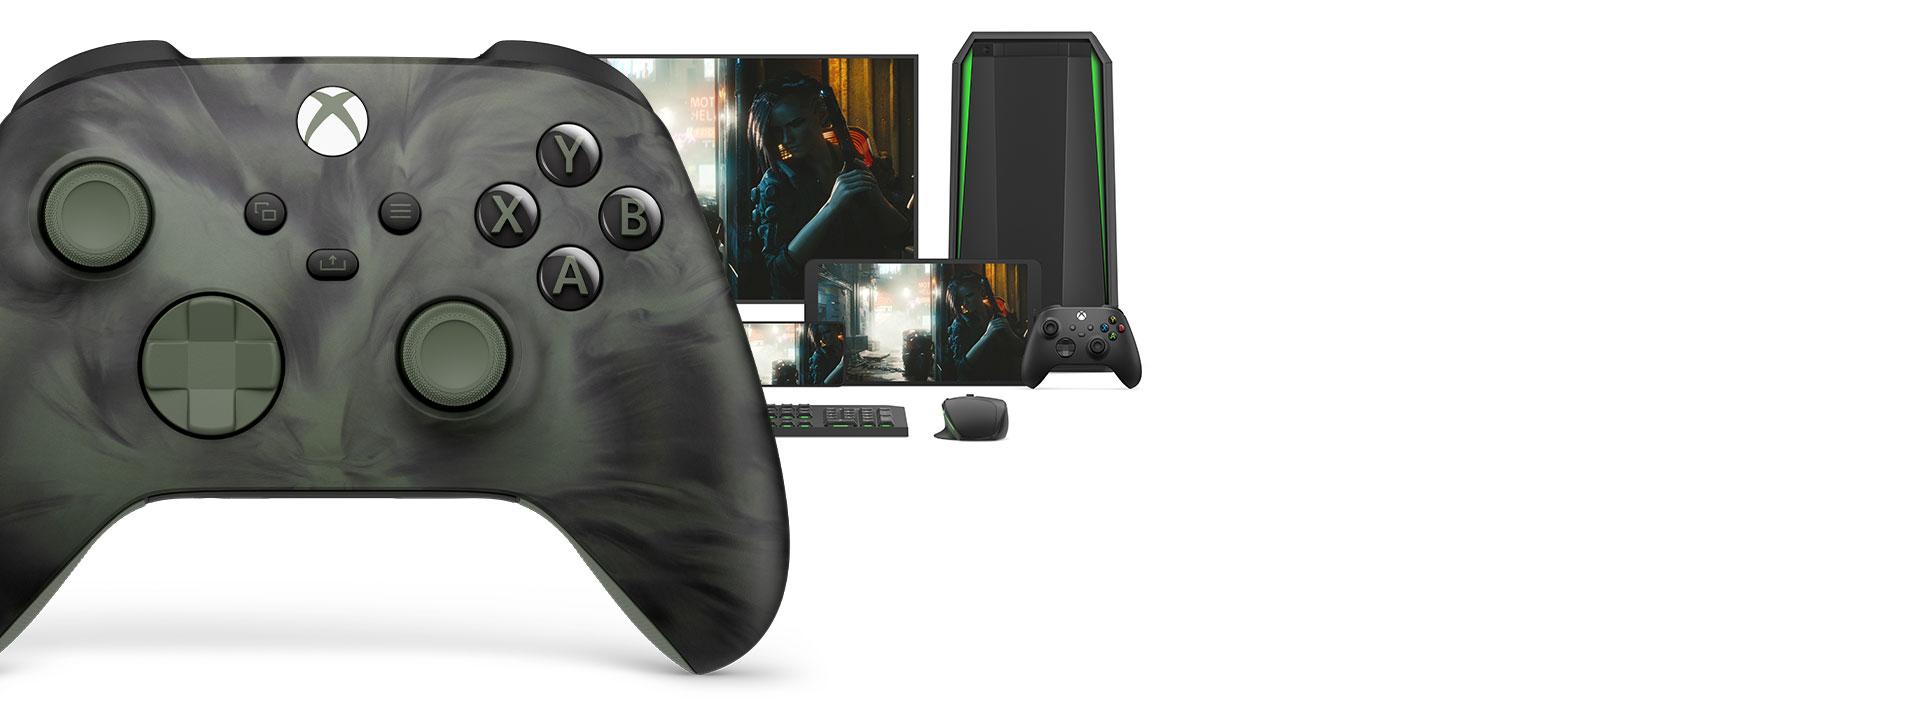 Prawa strona kontrolera bezprzewodowego Xbox w wersji specjalnej Nocturnal Vapor widziana z przodu, a za nią różne platformy do gier